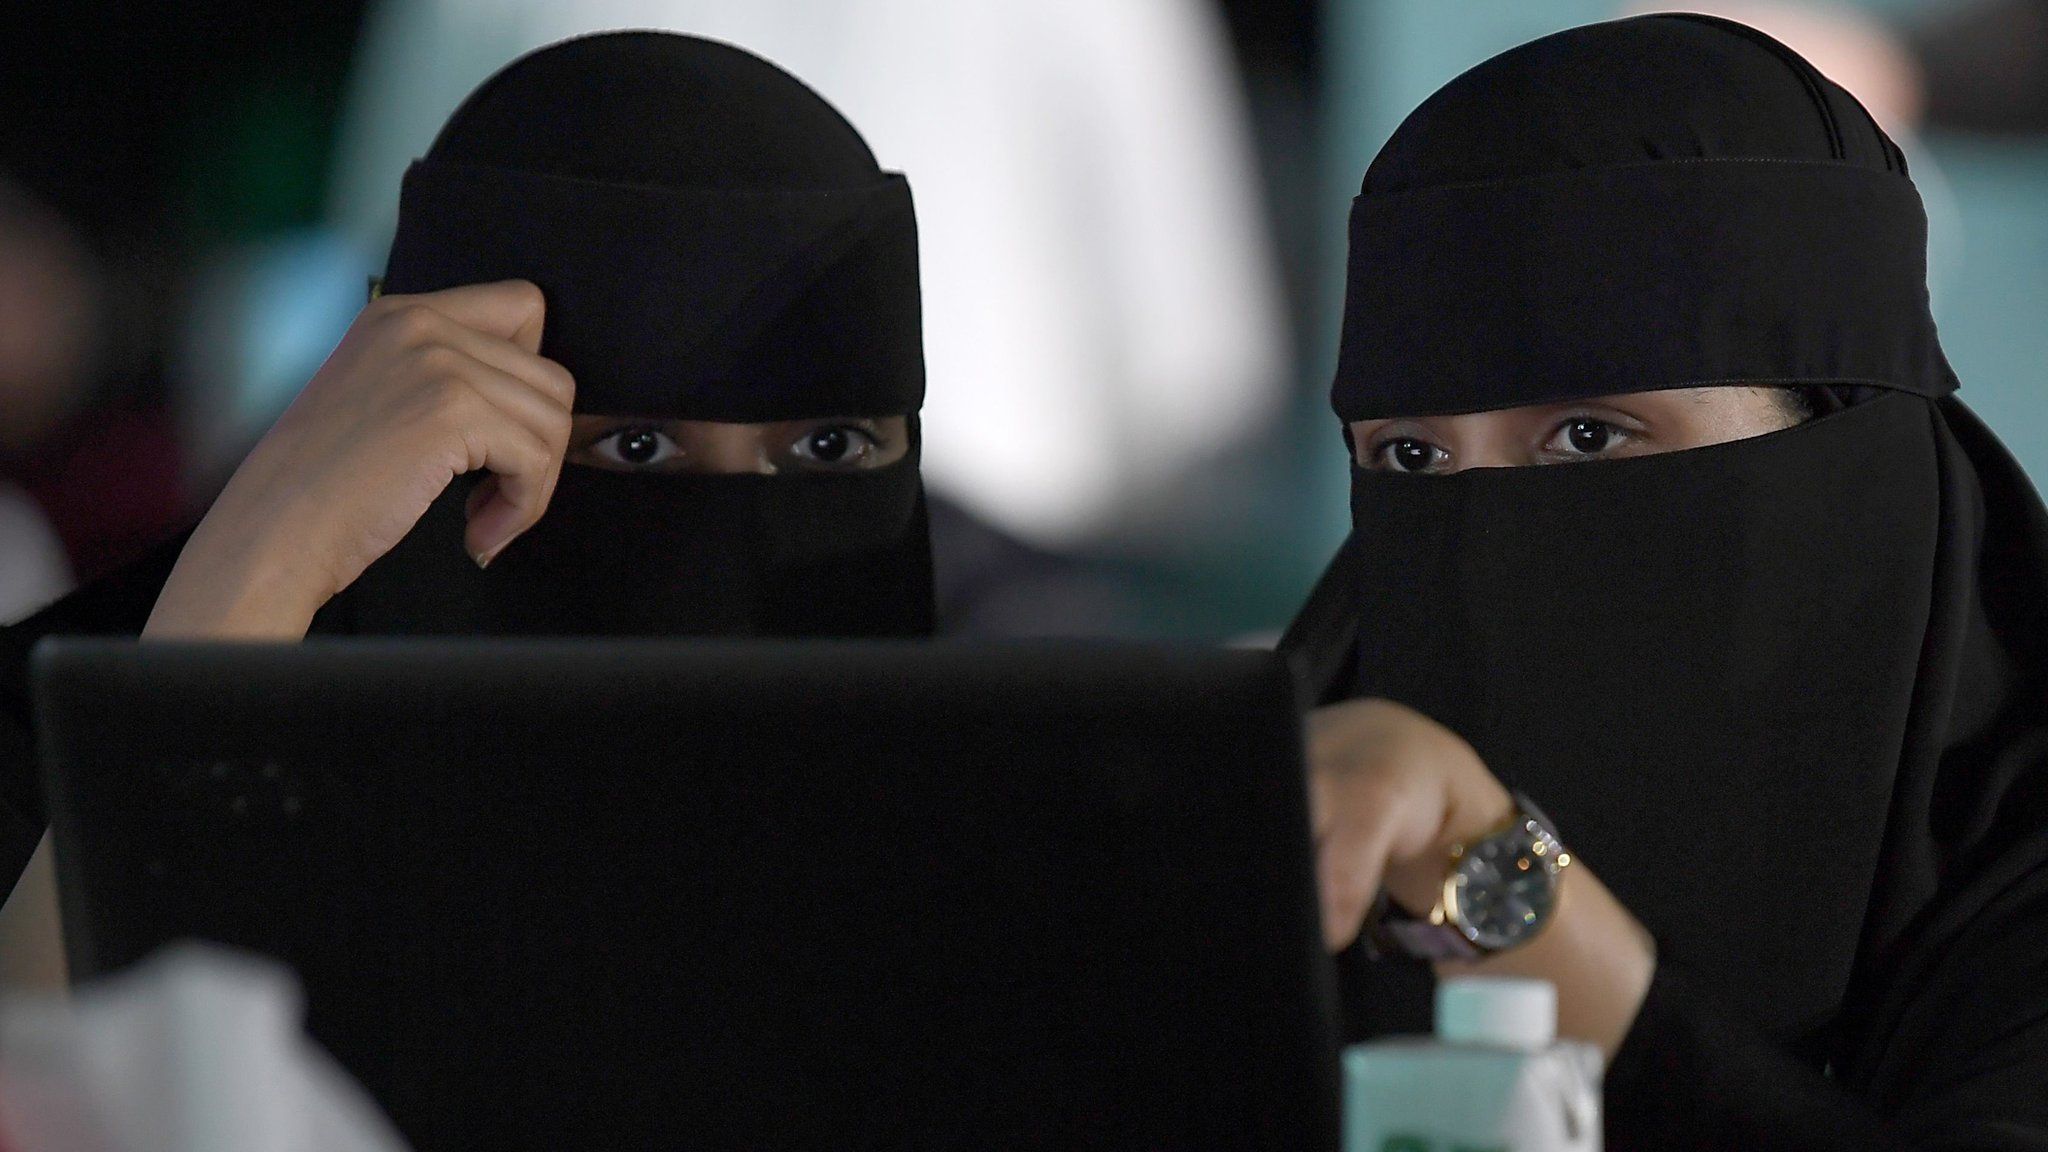 File photo showing Saudi women attending a hackathon in Jeddah on 31 July 2018